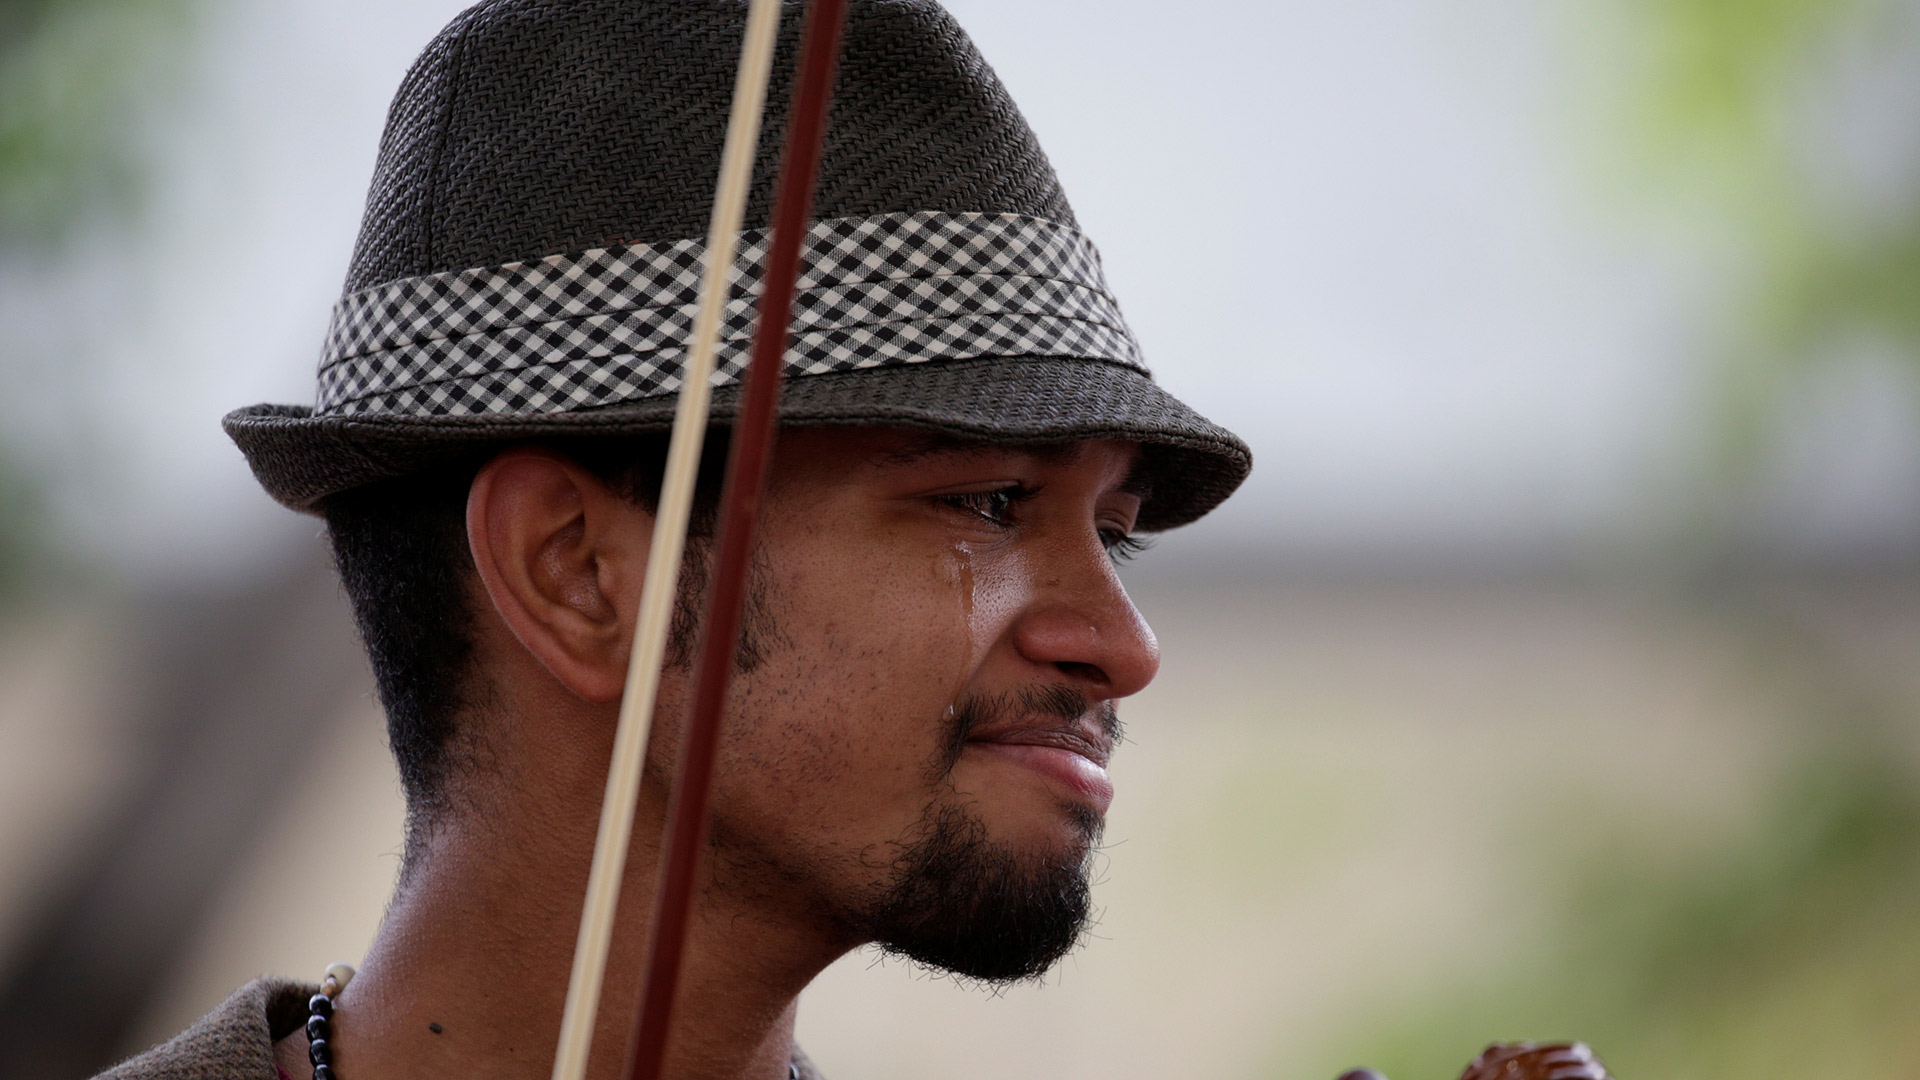 Liberan al violinista de las protestas contra Maduro